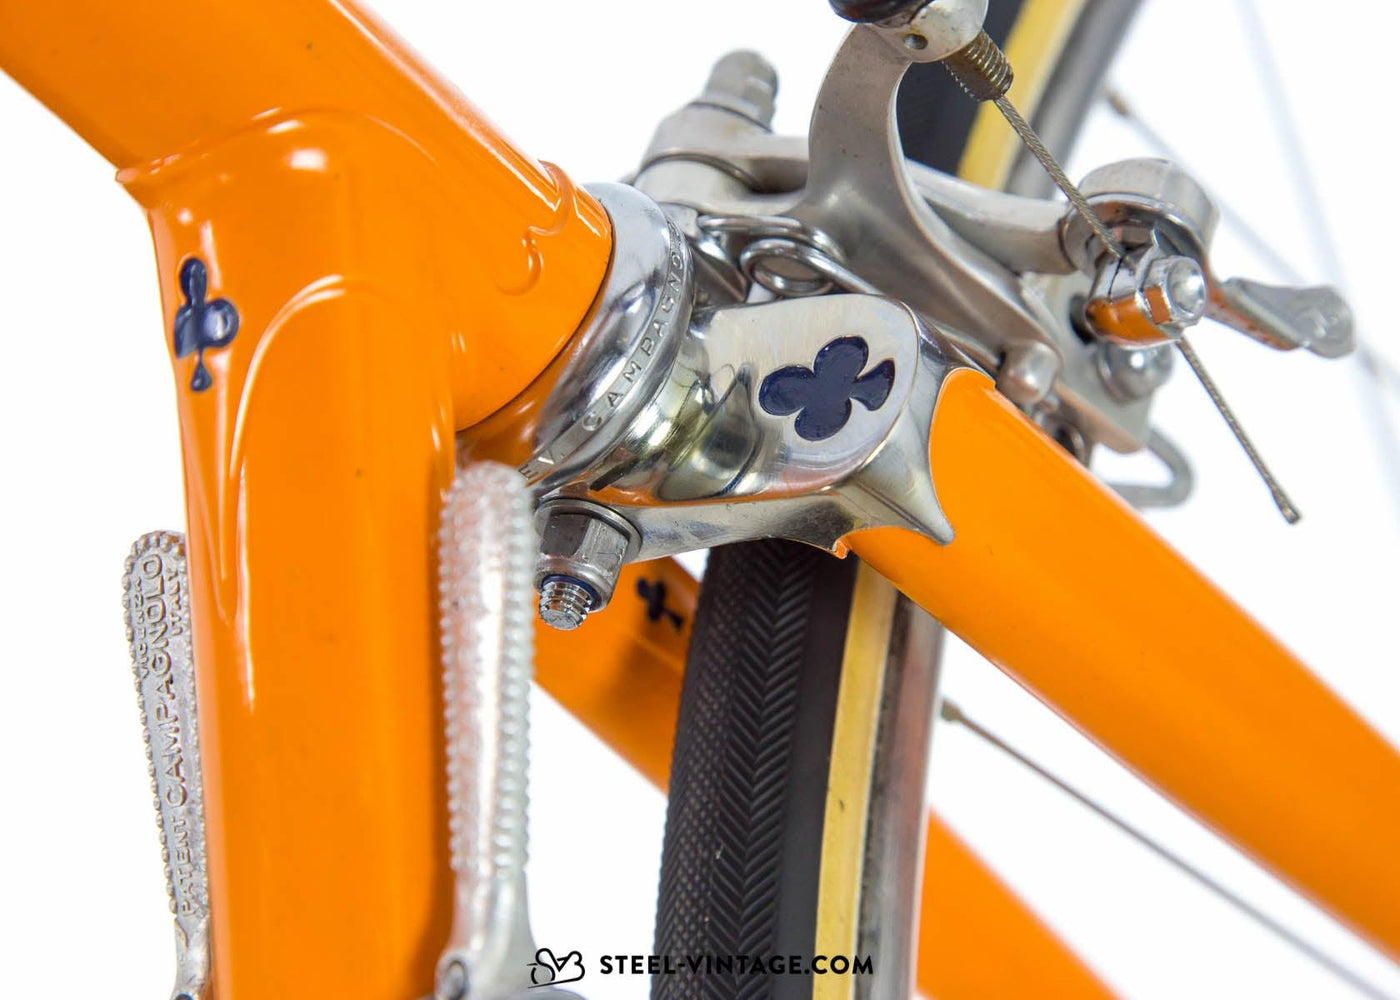 Colnago Super Team Molteni Replica 1974 - Steel Vintage Bikes